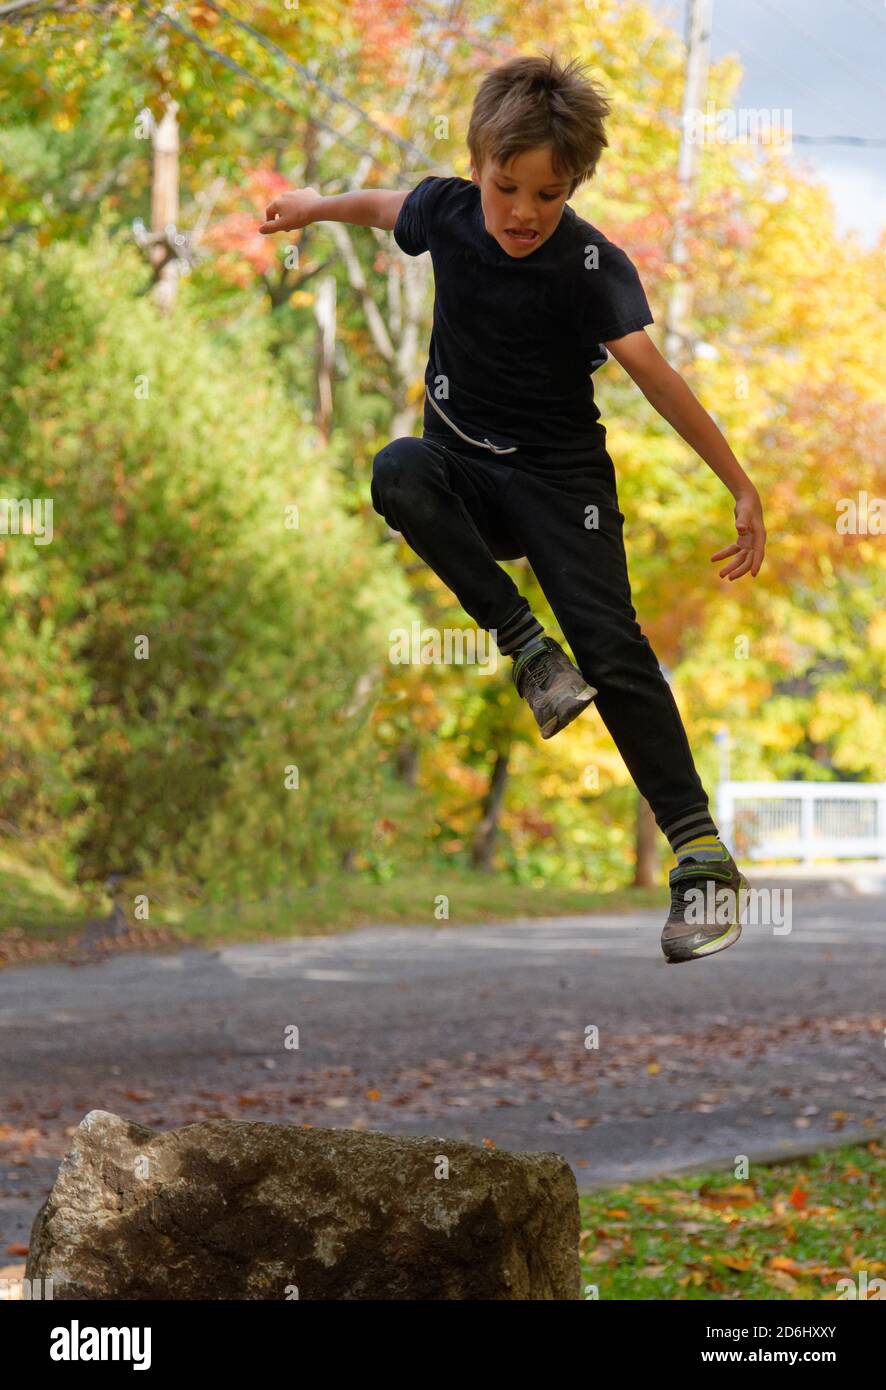 Un garçon sportif de 8 ans sautant haut dans le air Banque D'Images